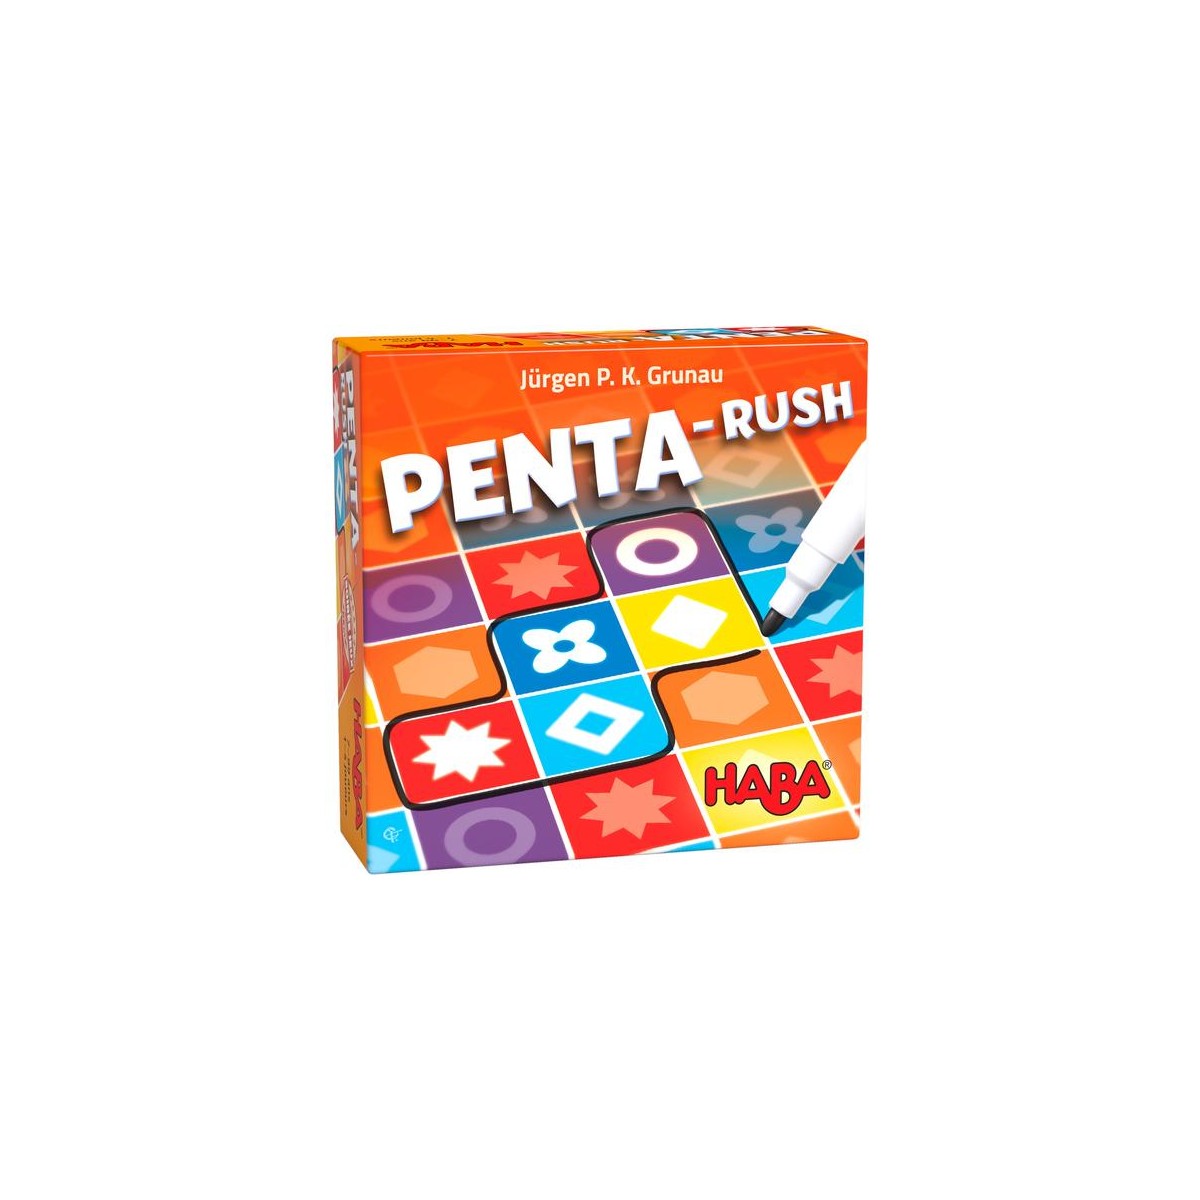 Penta-Rush